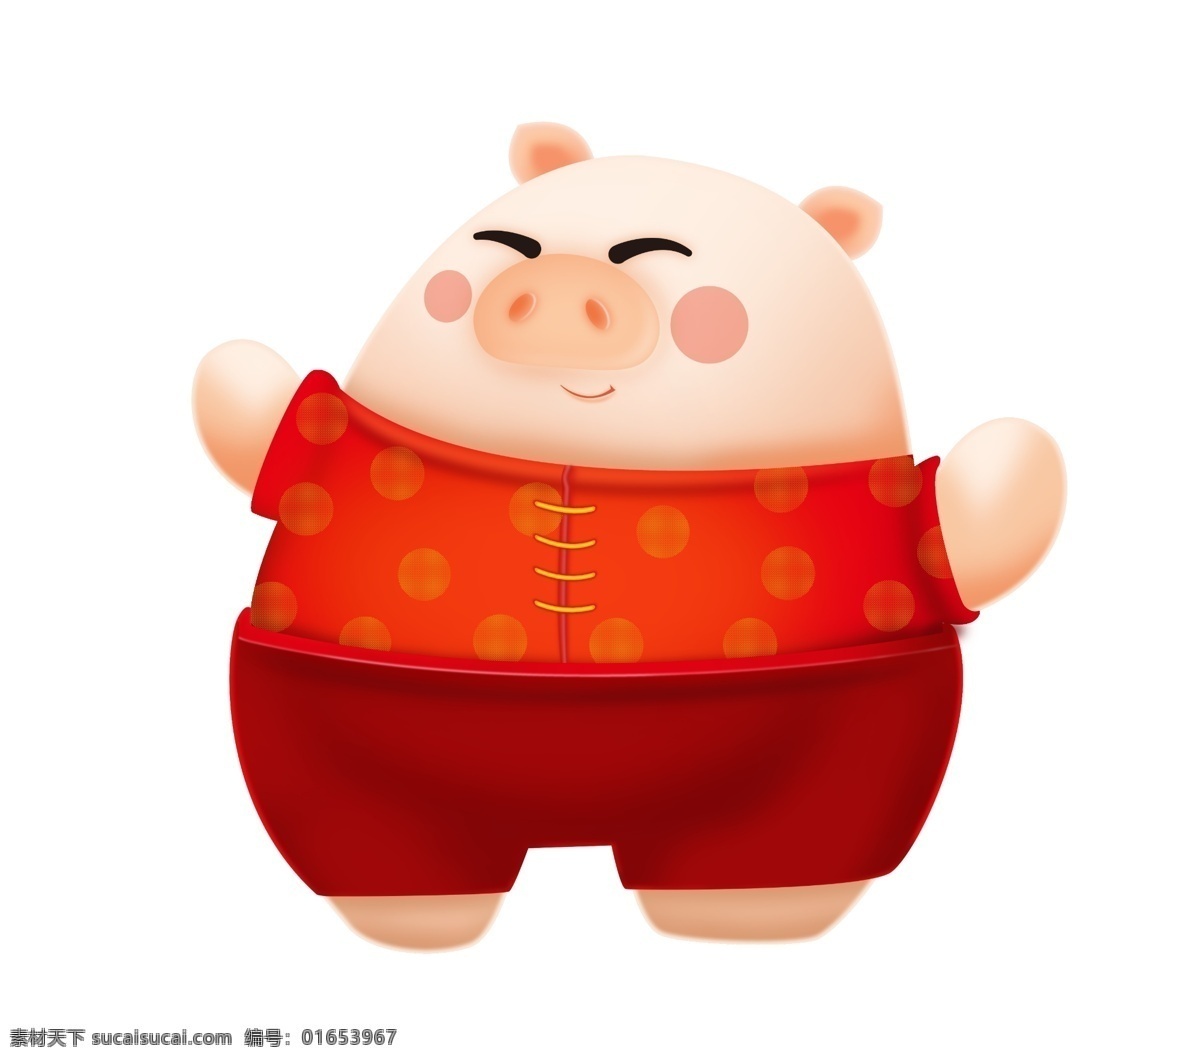 举 着手 胖胖 小 猪 插画 白白胖胖 穿着 红衣 服 红色的衣服 举手的小猪 胖胖的小猪 眯眼的小猪